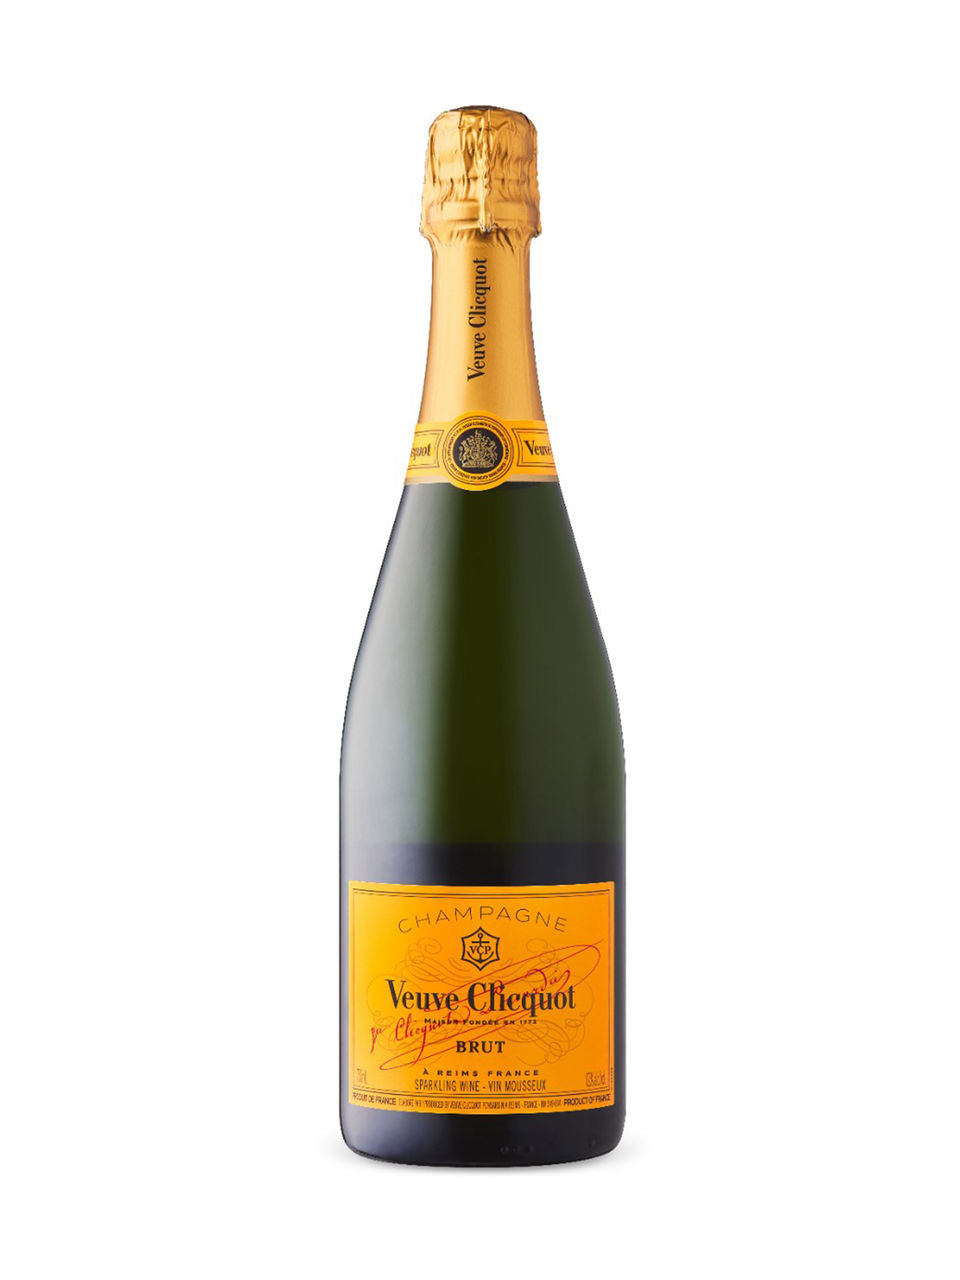 Veuve Clicquot Brut Champagne 750 ml bottle